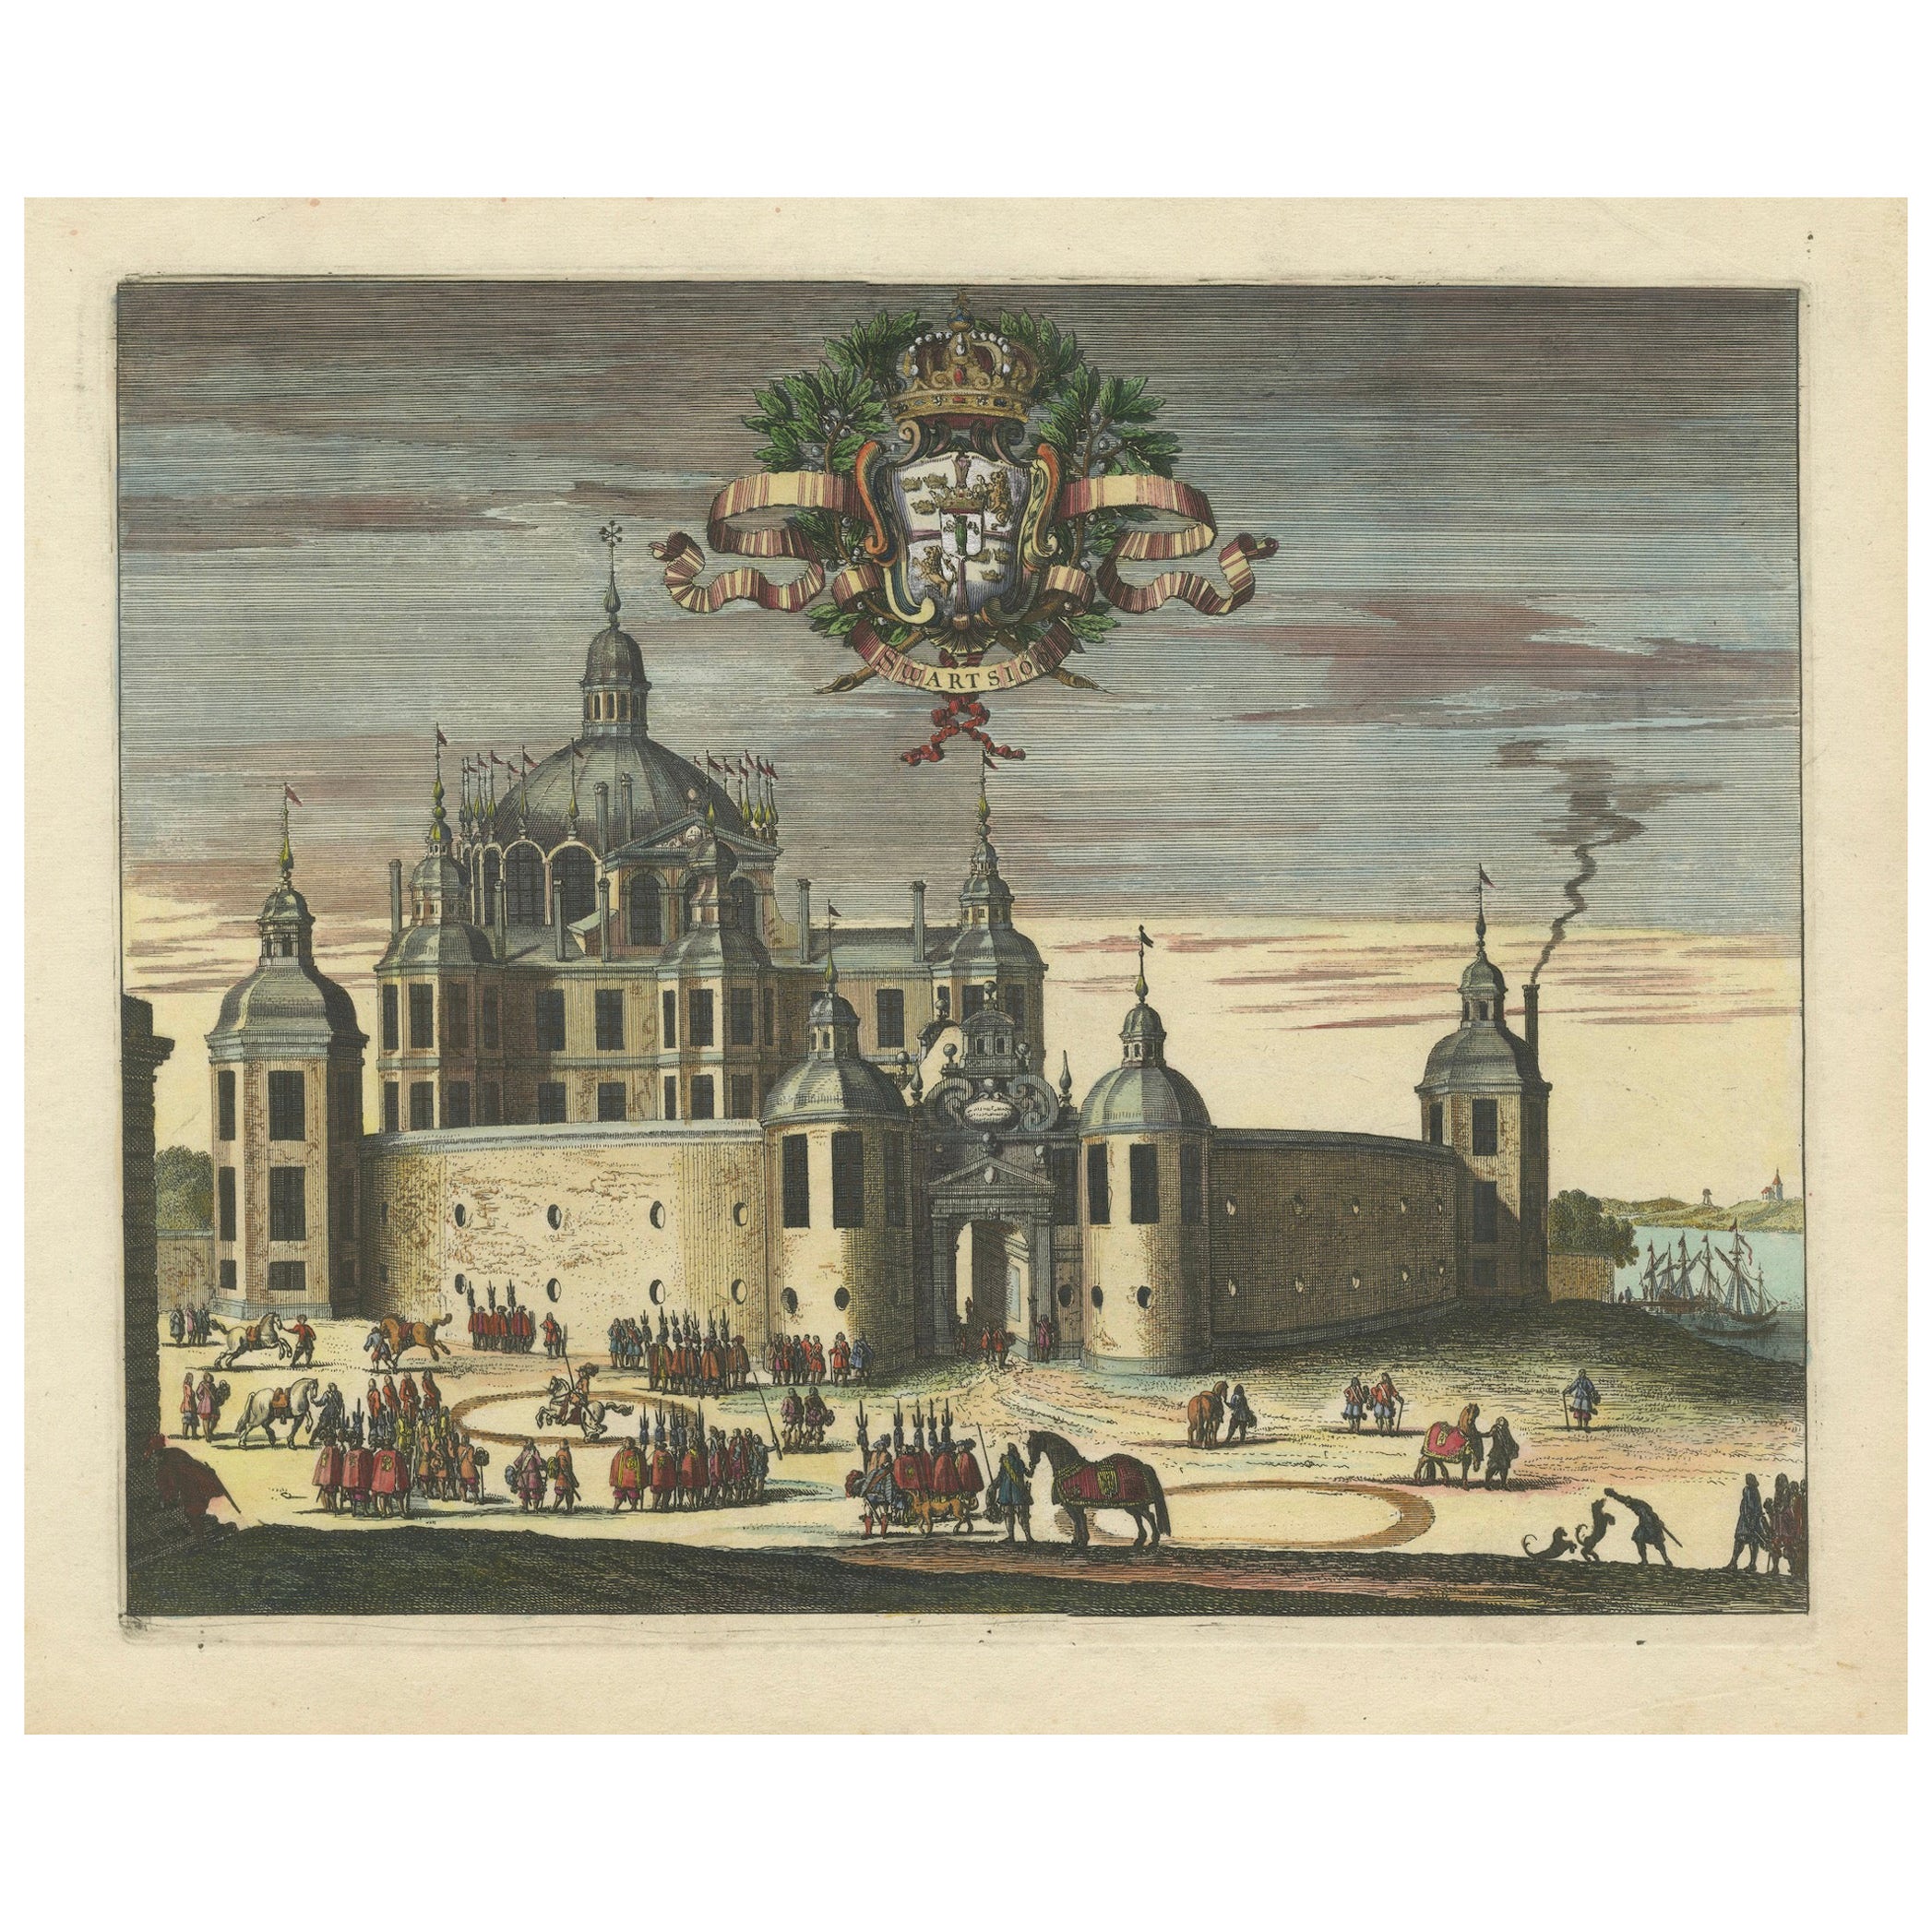 Barocke Majestät: Eine lebendige Versammlung im Schloss Svartsjö in Schweden, 1693